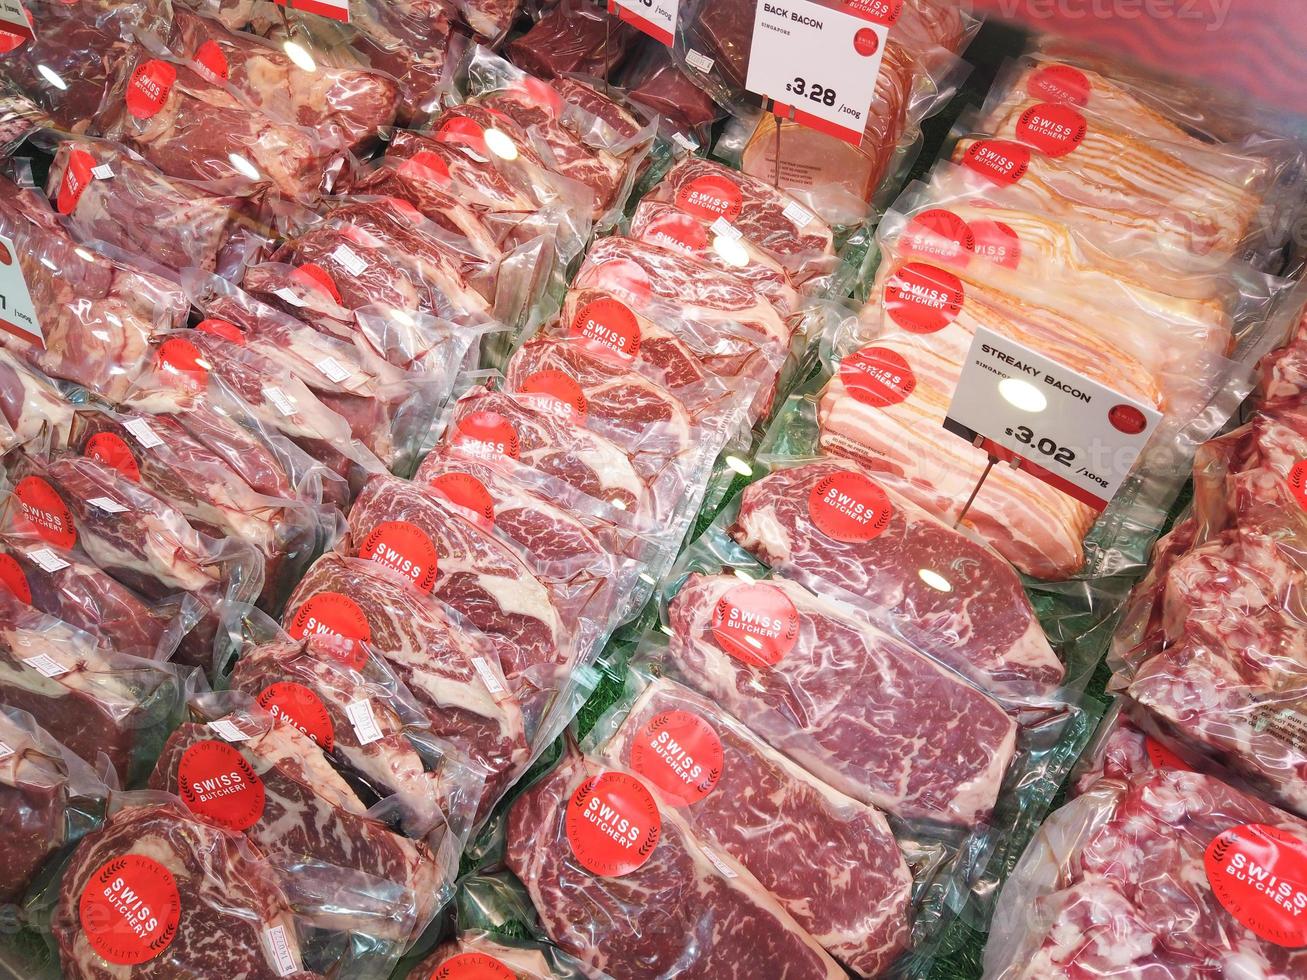 singapore orchad road 1 juni 2021, rauw rood vlees display te koop in winkel foto